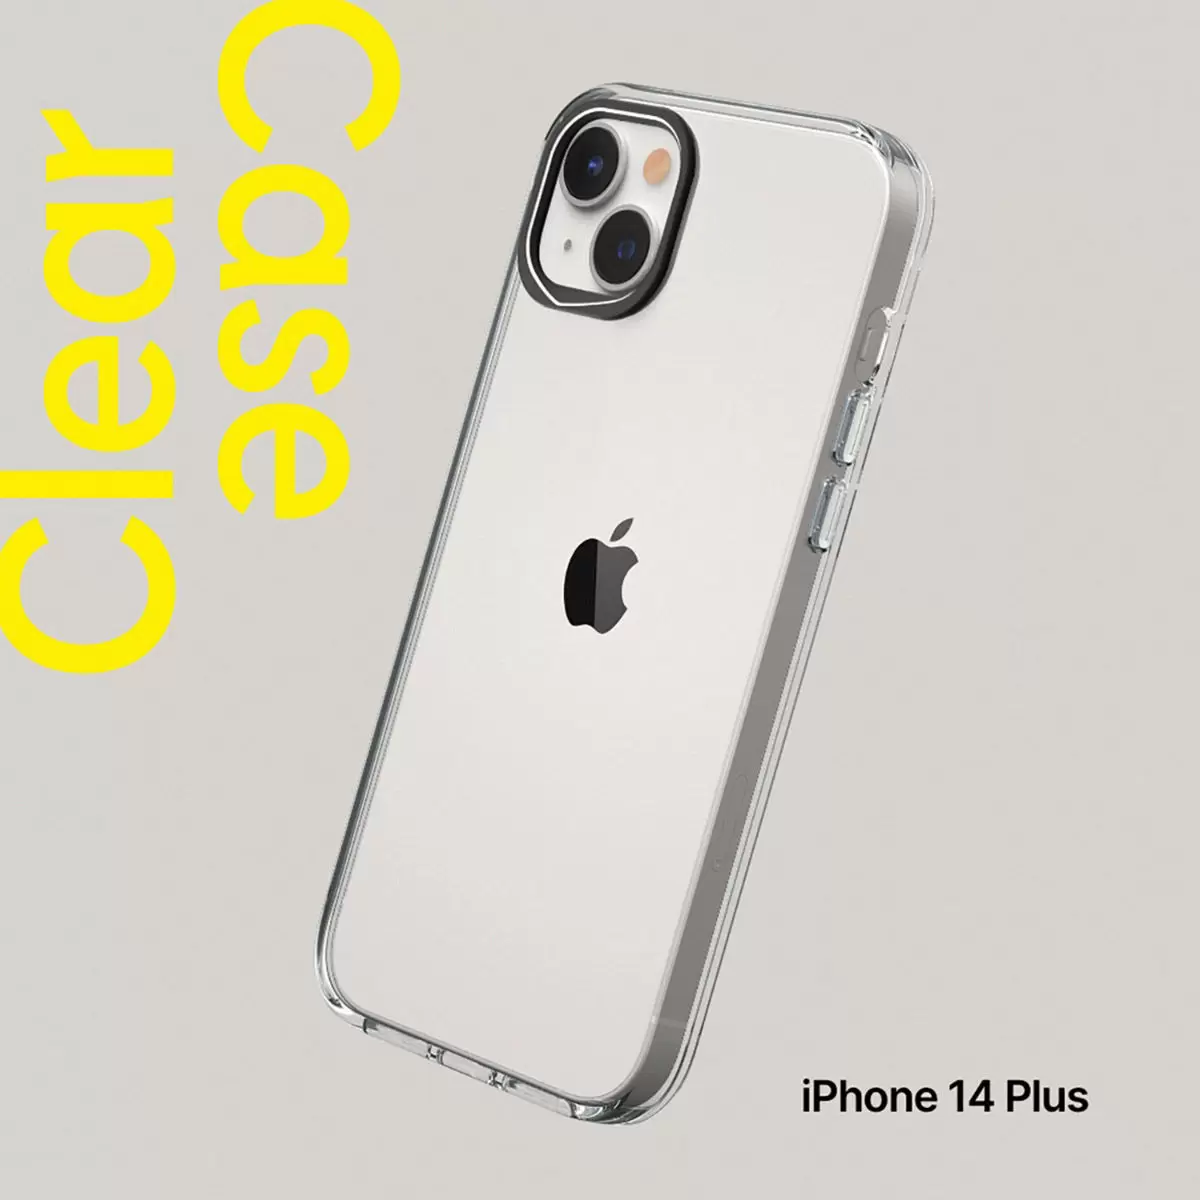 犀牛盾 iPhone 14 Plus Clear 透明防摔手機殼 + 9H 3D滿版螢幕玻璃保護貼 + 手機掛繩 清水灰